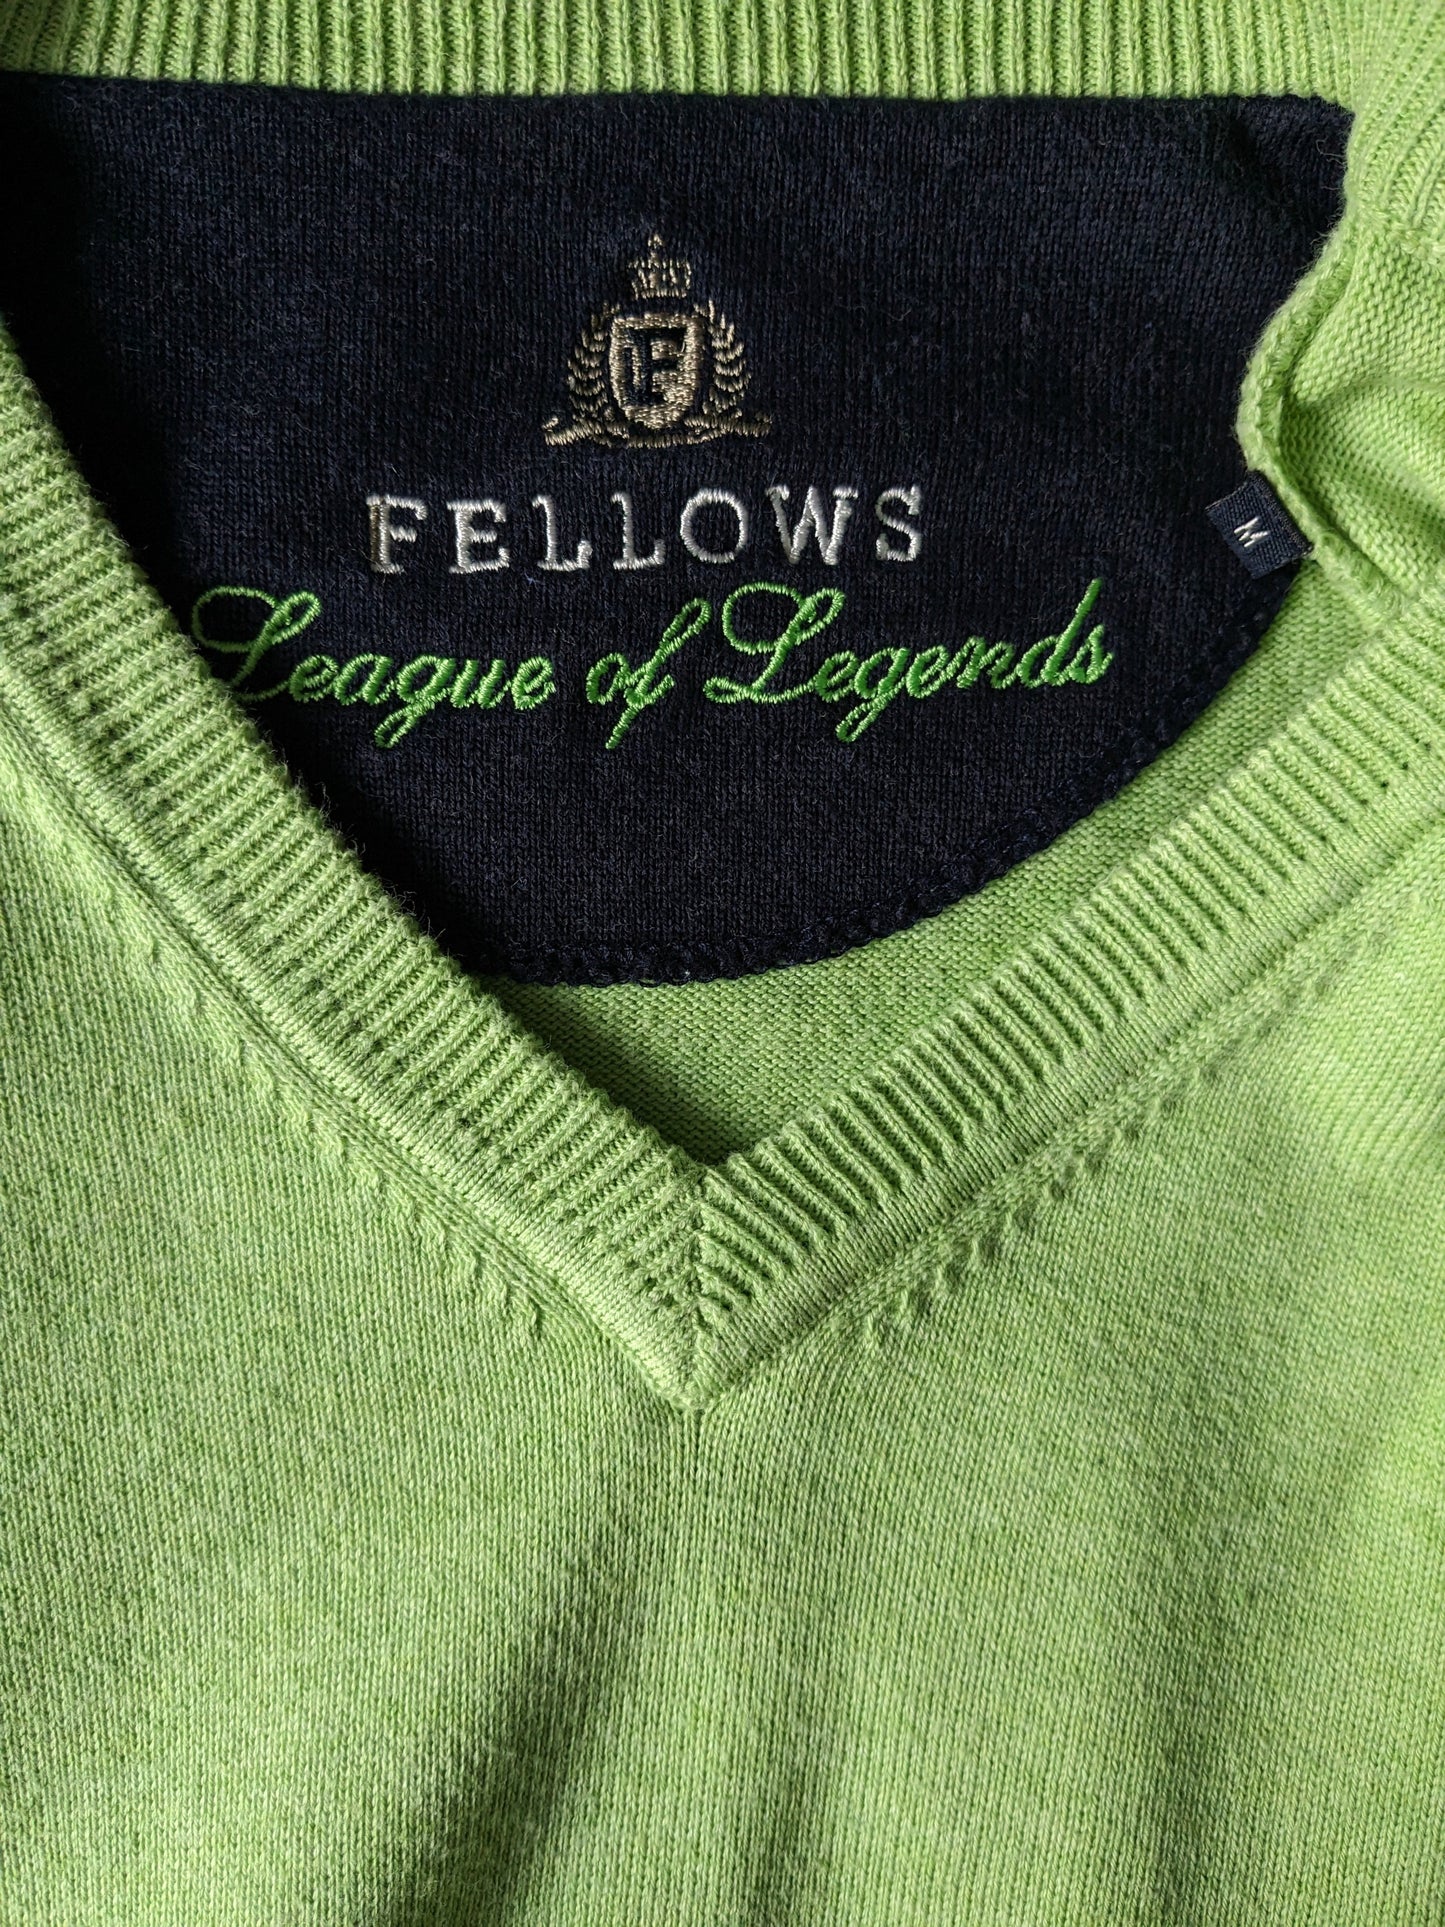 Sweater de cuello en V de la Liga de Legends de Fellows. Verde. Talla M.